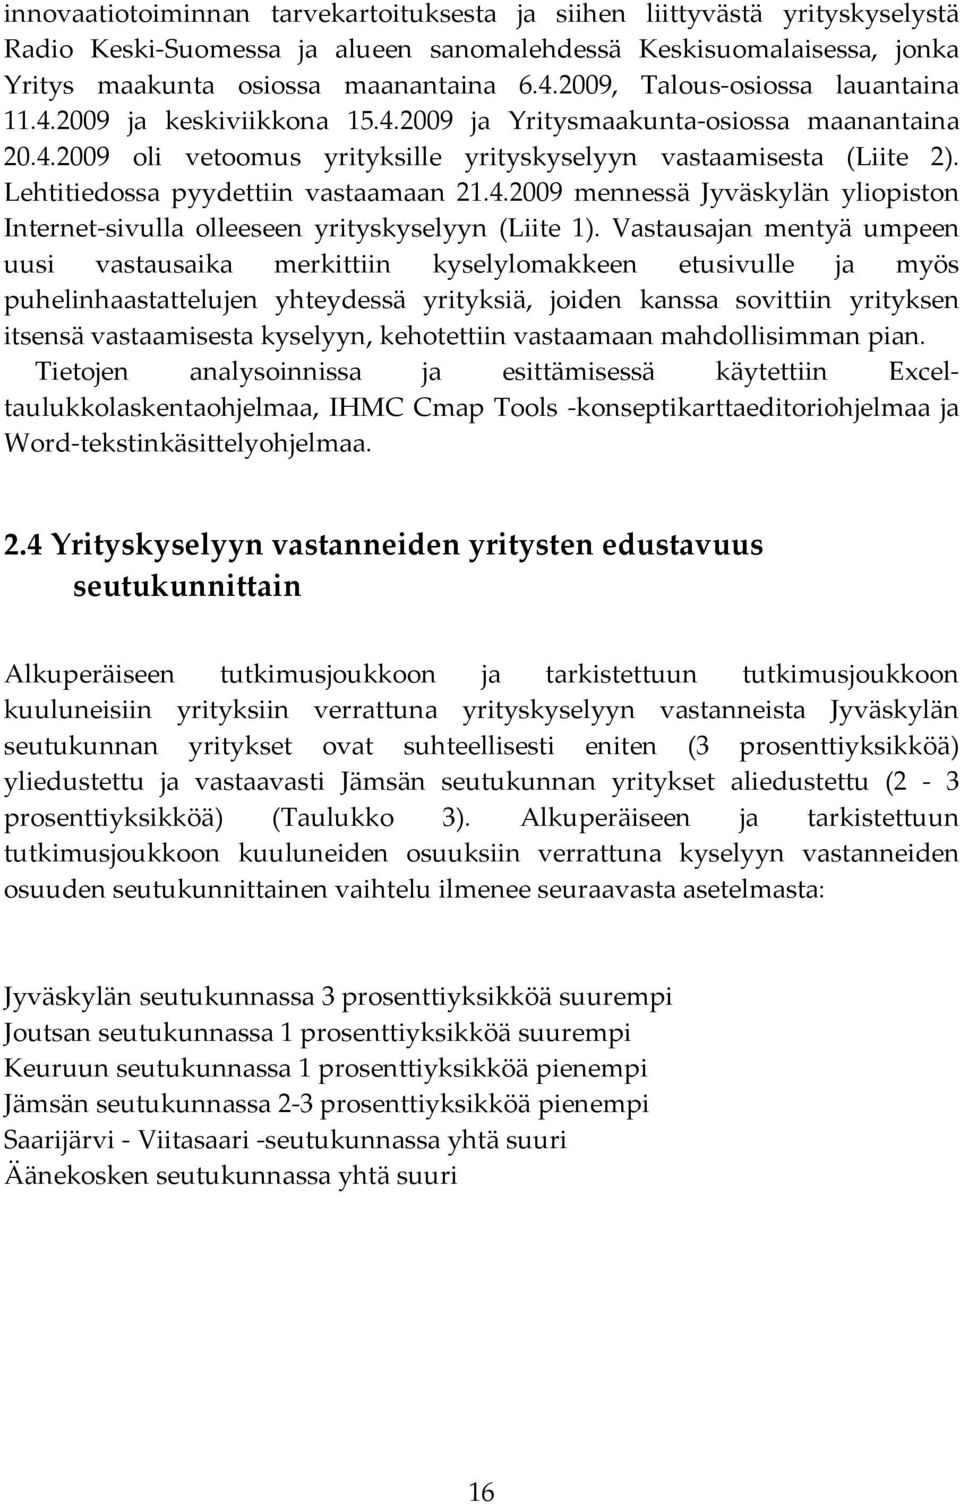 Lehtitiedossa pyydettiin vastaamaan 2.4.2009 mennessä Jyväskylän yliopiston Internet-sivulla olleeseen yrityskyselyyn (Liite ).